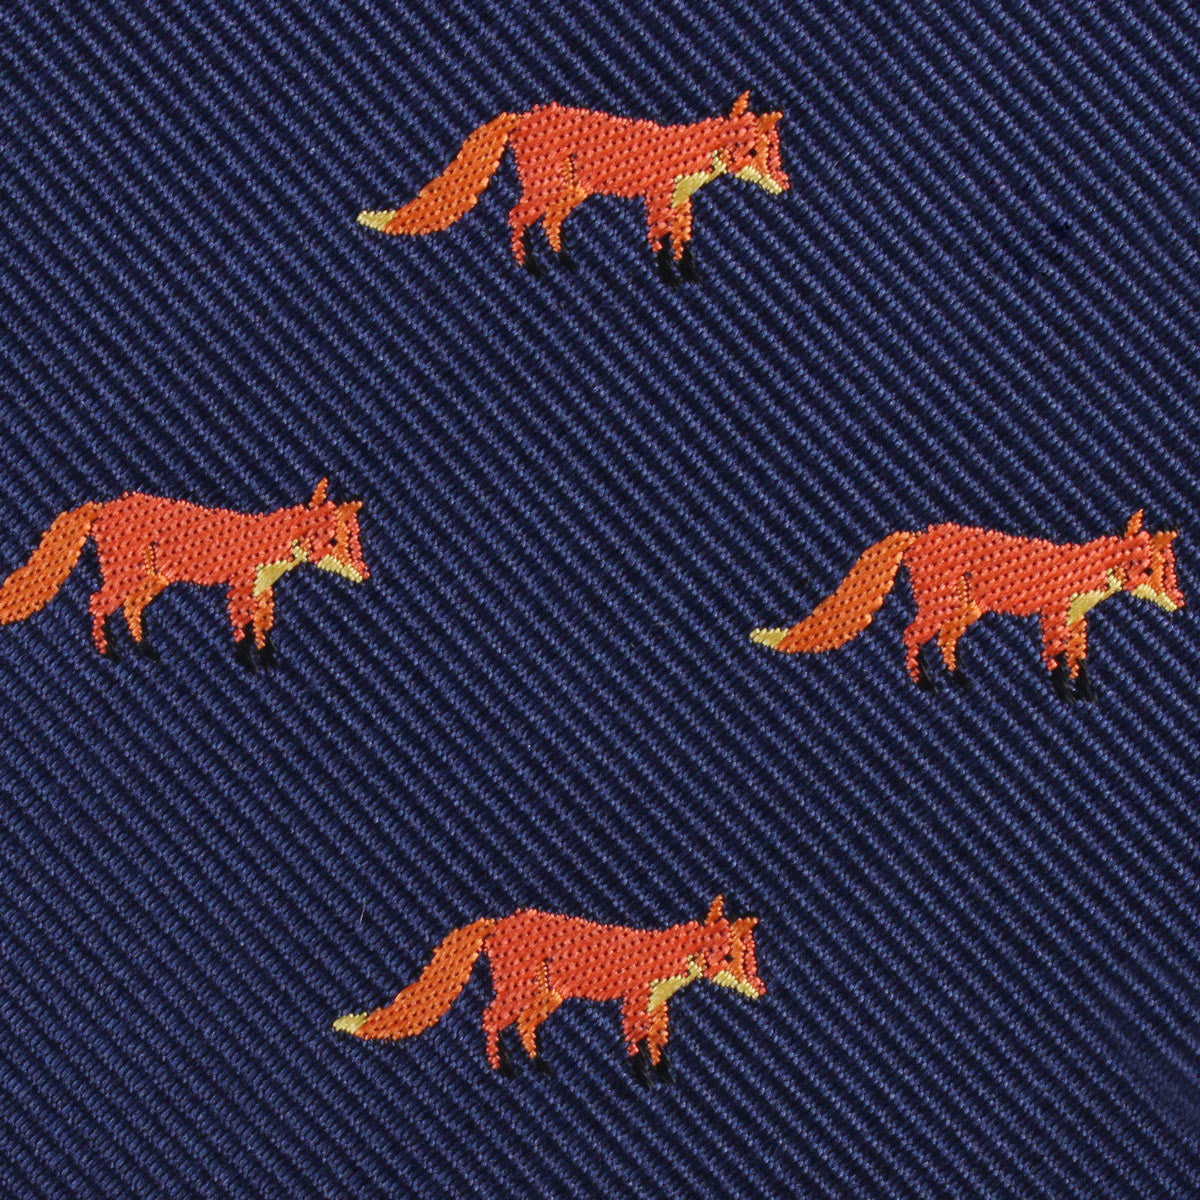 Mr Fox Fabric Necktie